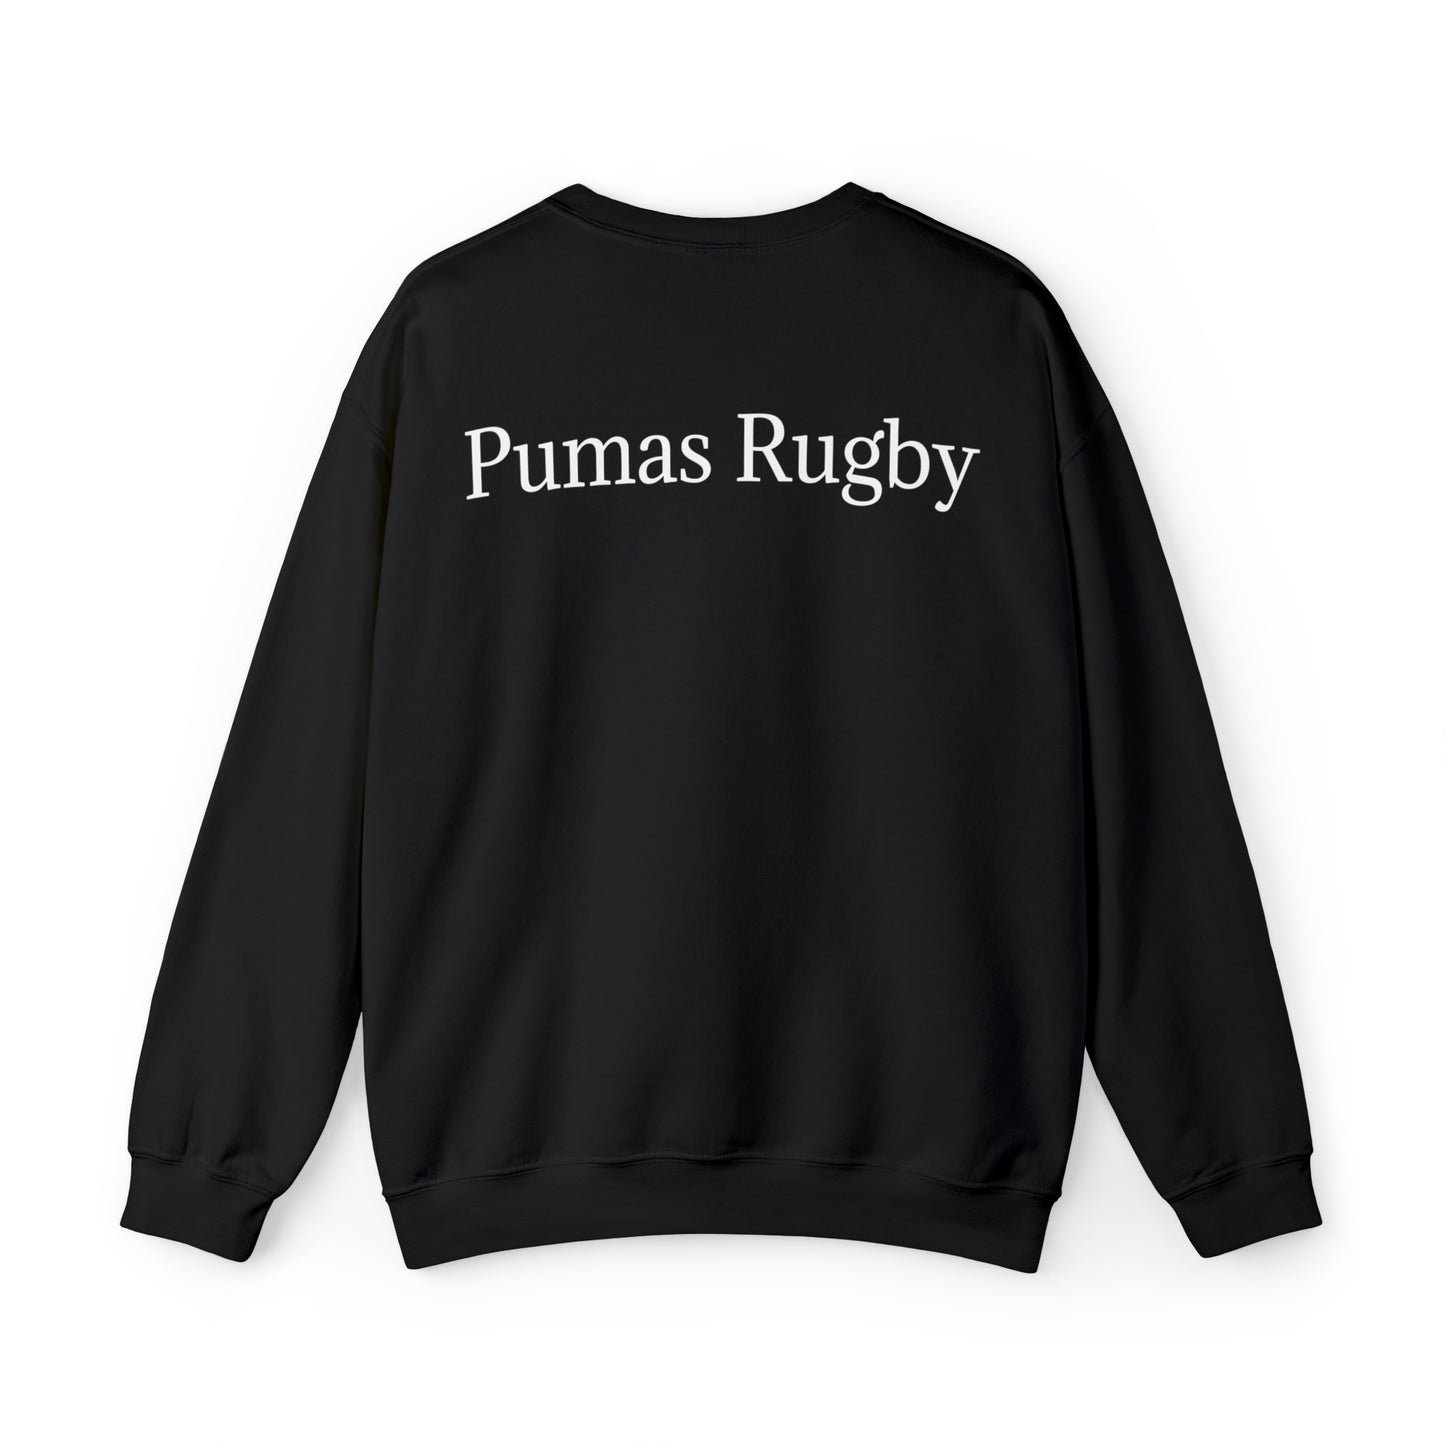 Pumas lifting RWC - black sweatshirt